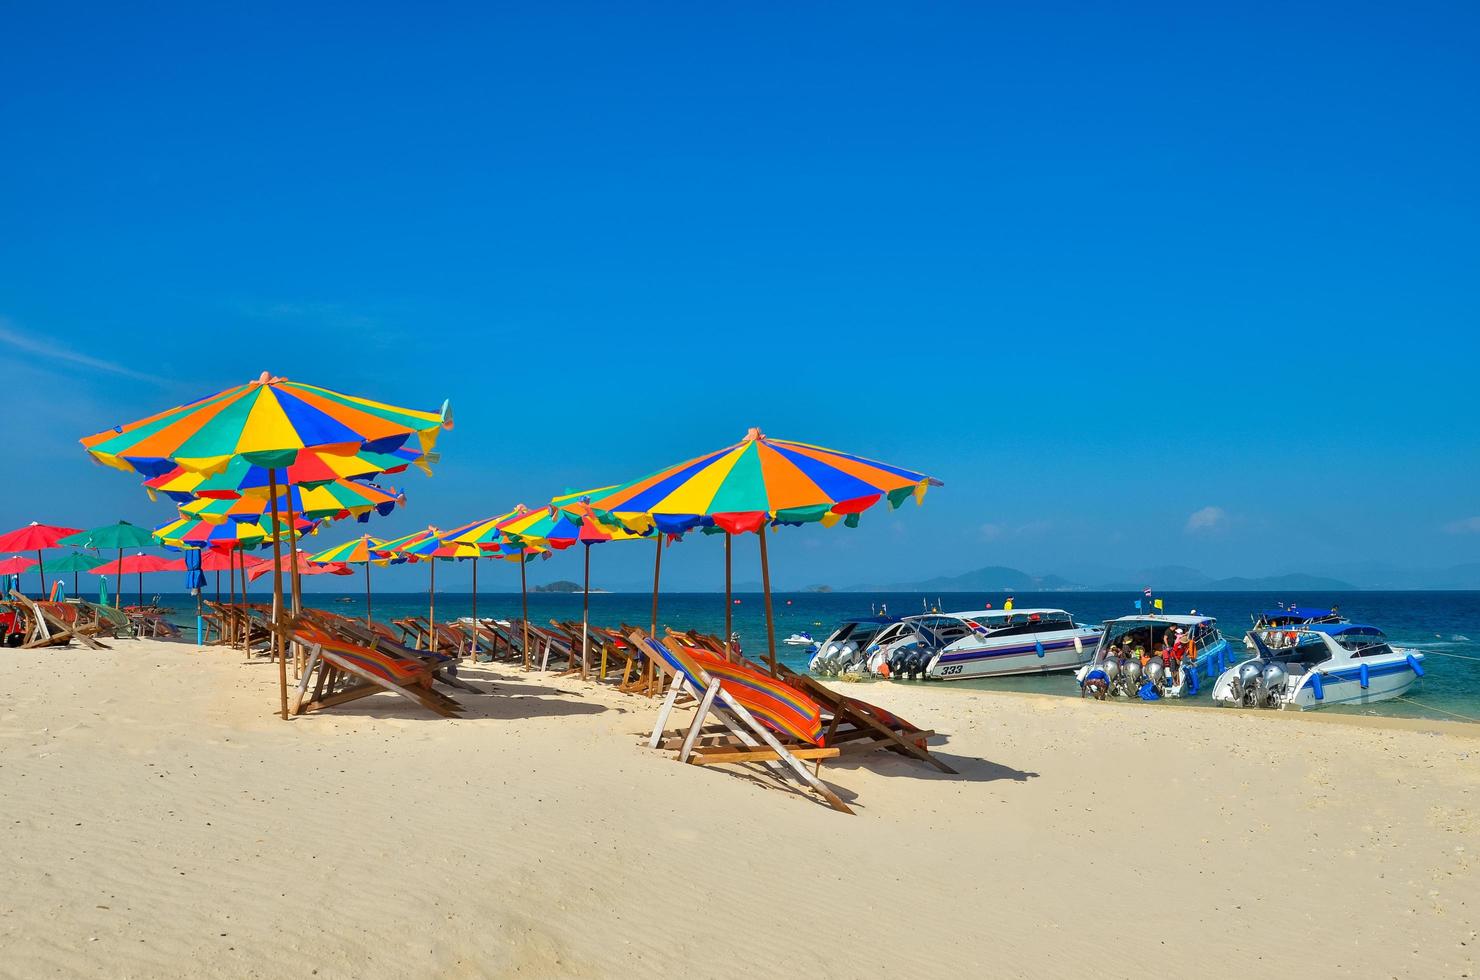 Phuket, Thailand, 2020 - Stühle und Sonnenschirme an einem Strand mit Menschen und Booten foto